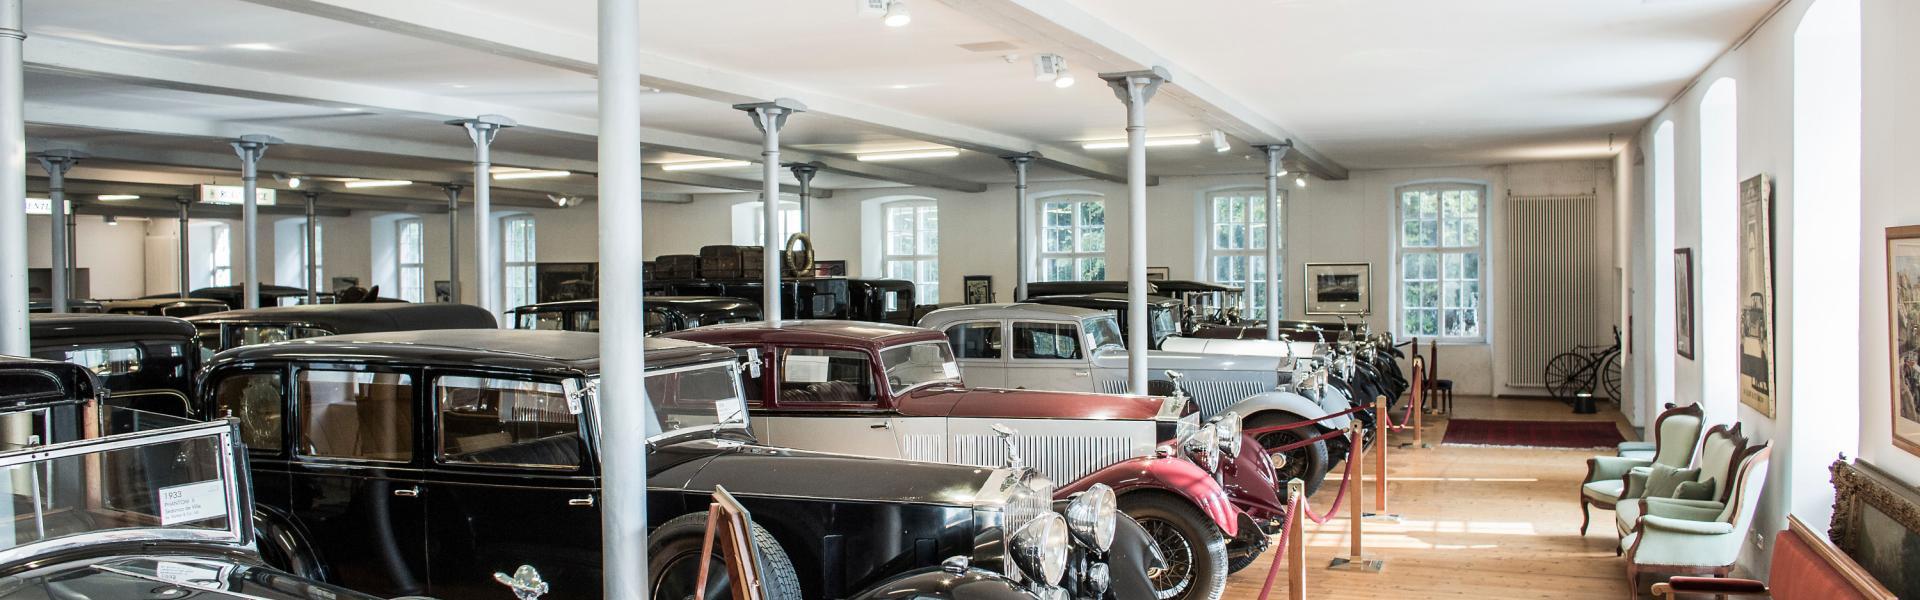 Rolls Royce Museum in Hohenems